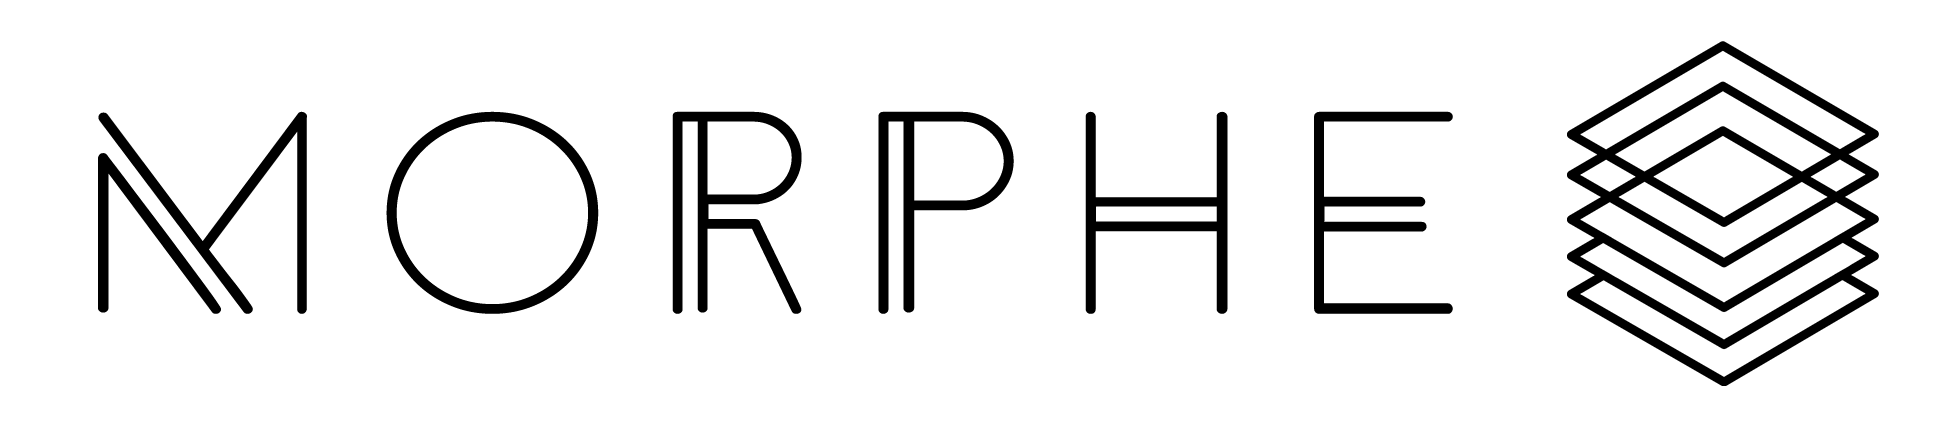 Morphe-logo